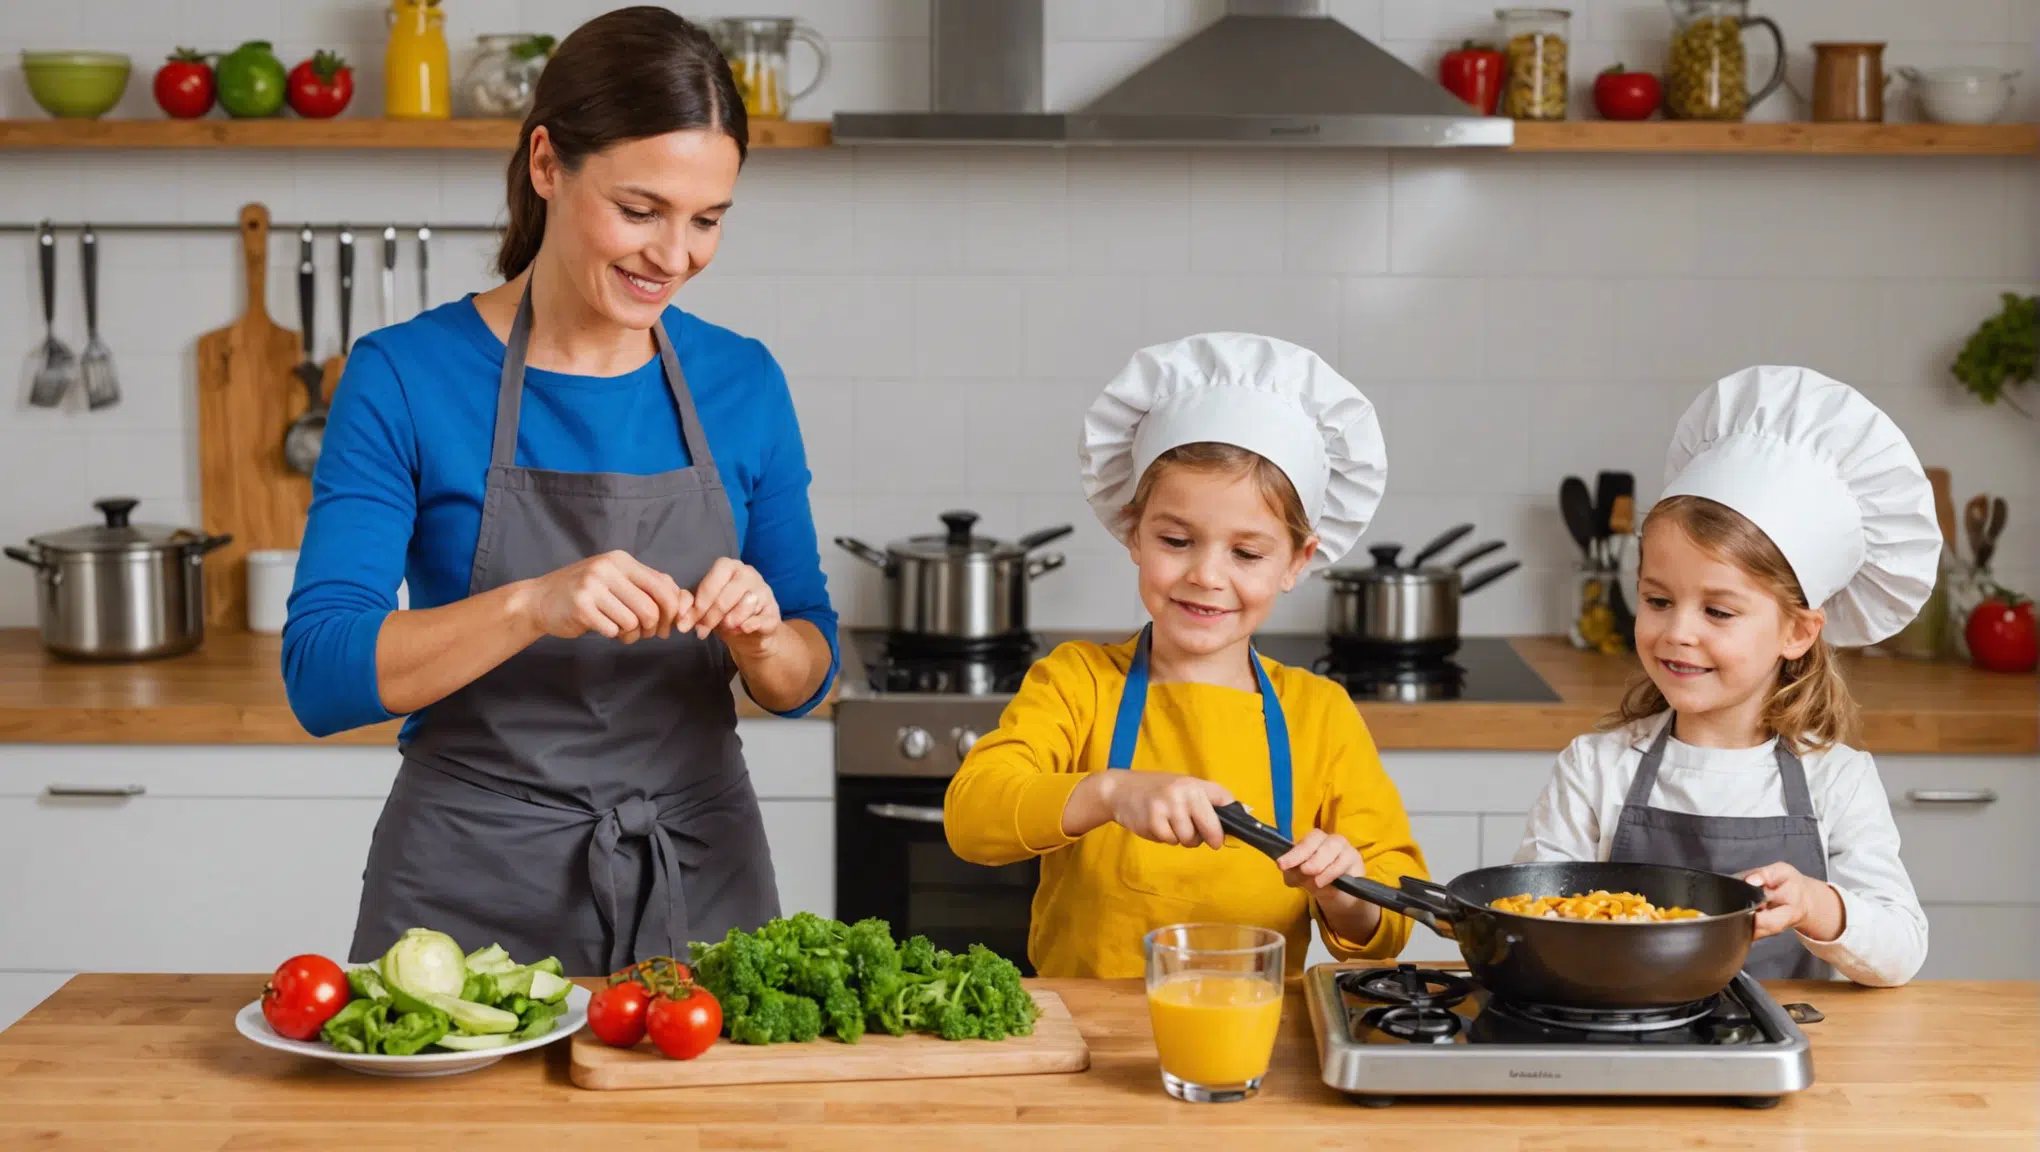 découvrez comment rendre la cuisine amusante pour les enfants et les familles avec nos conseils pratiques et nos idées de recettes ludiques.